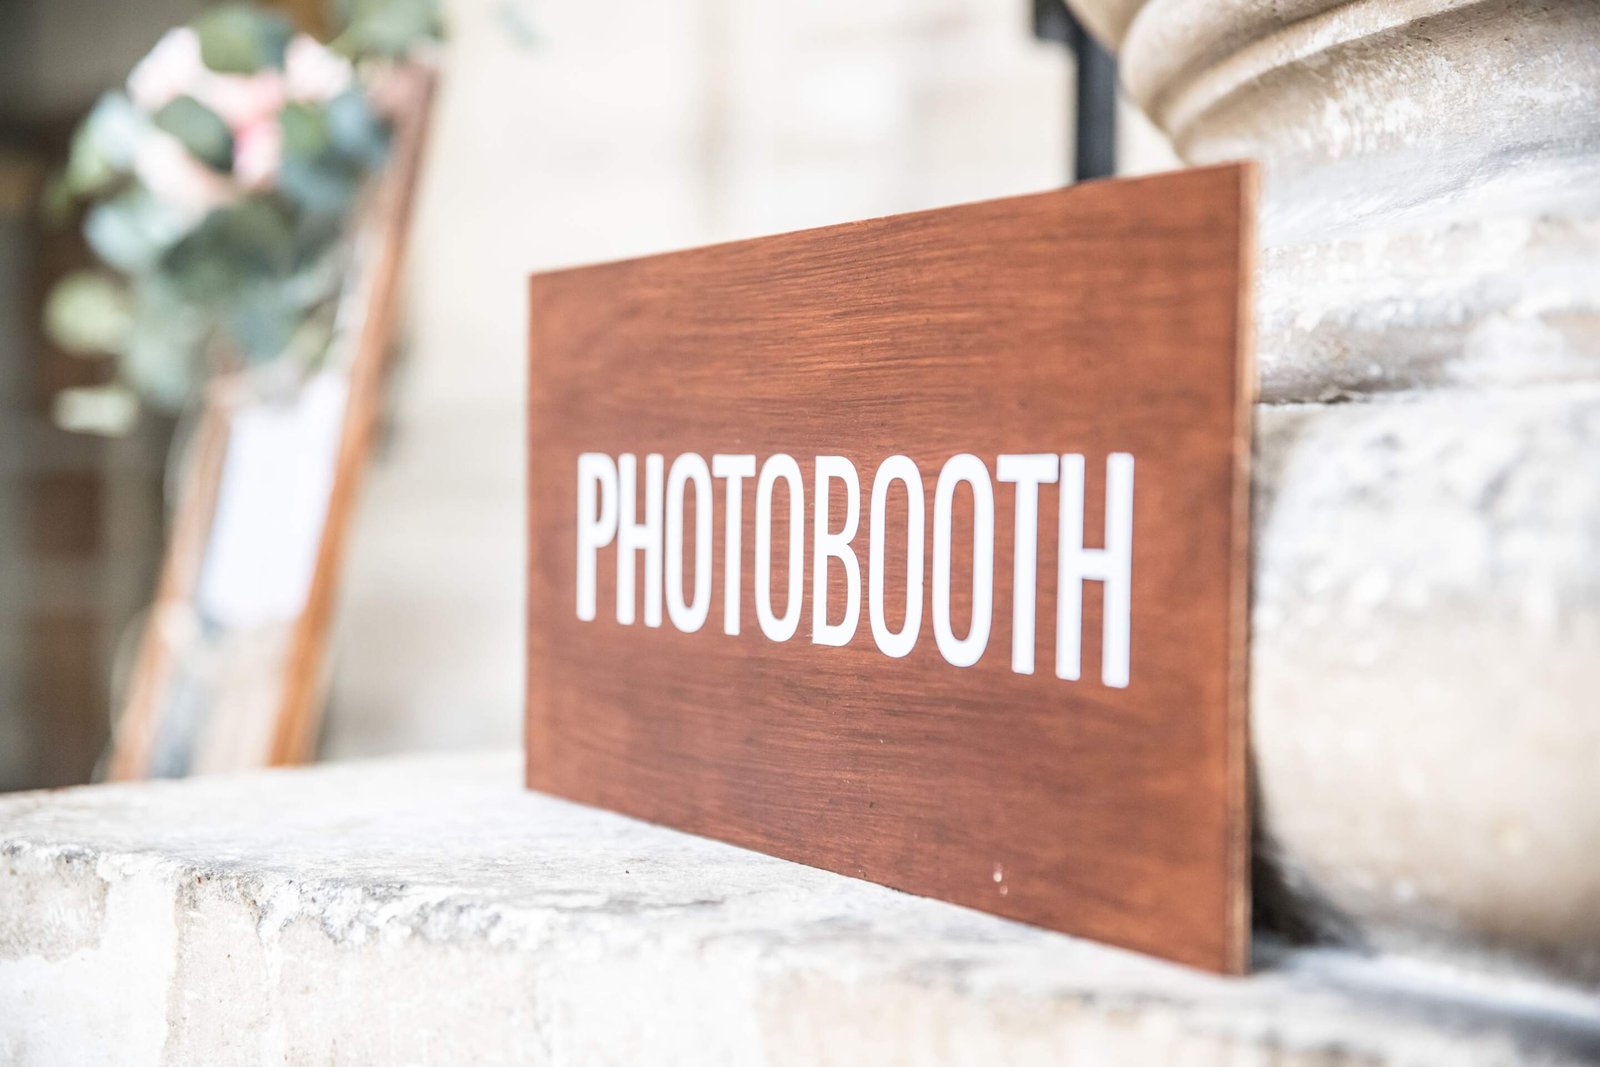 Le but de cet article est de vous fournir un comparatif des photobooth. La photographie est un panneau indiquant la présence d'un photobooth.